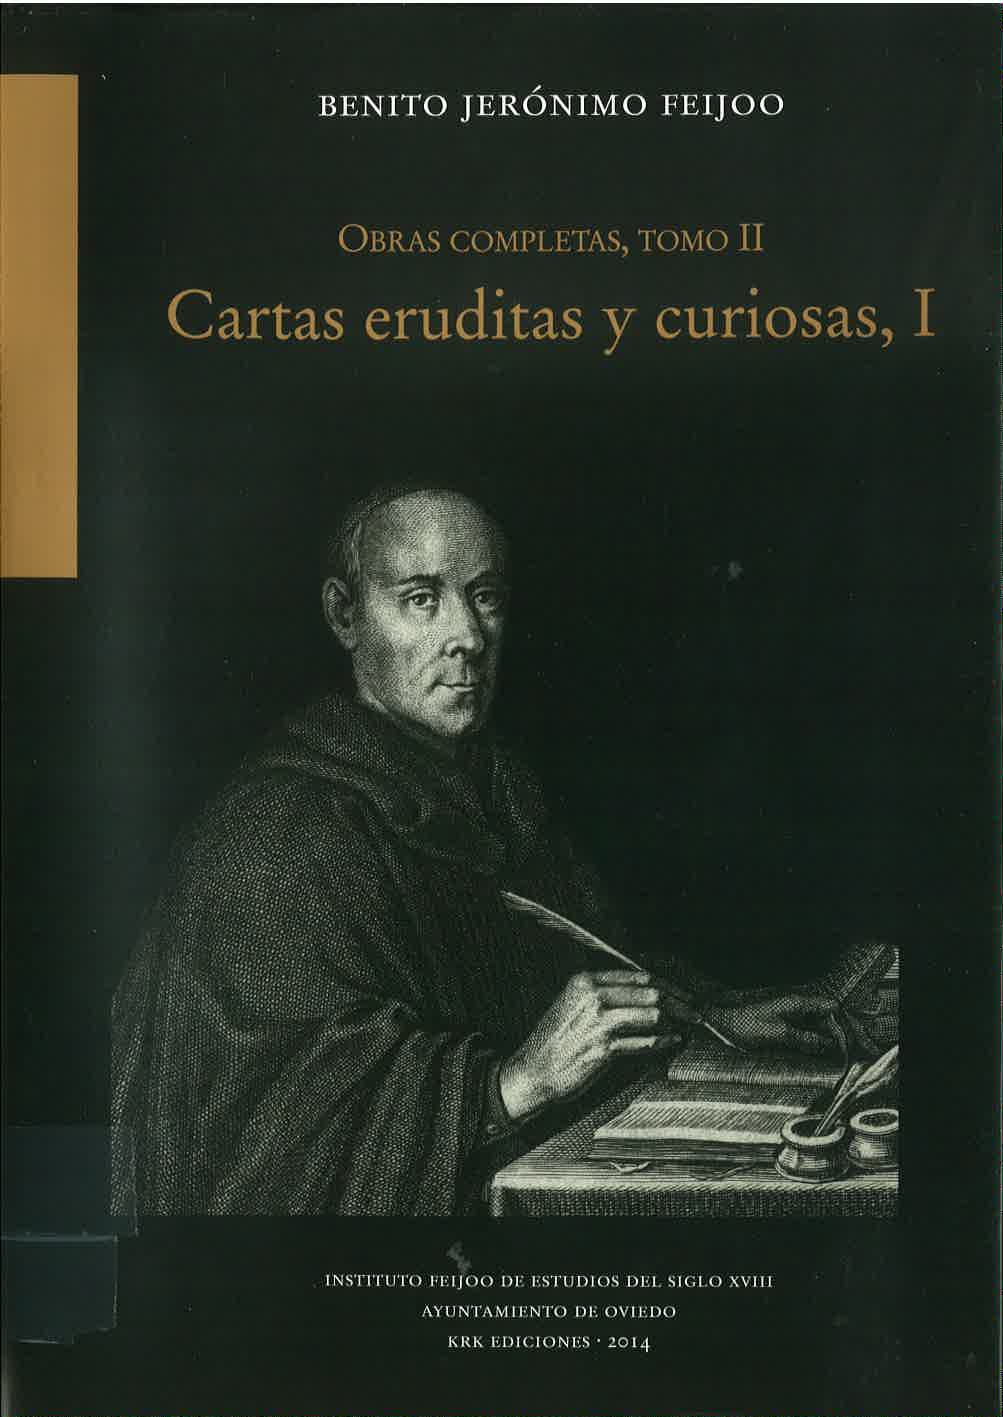 Imagen de portada del libro Cartas eruditas y curiosas, I